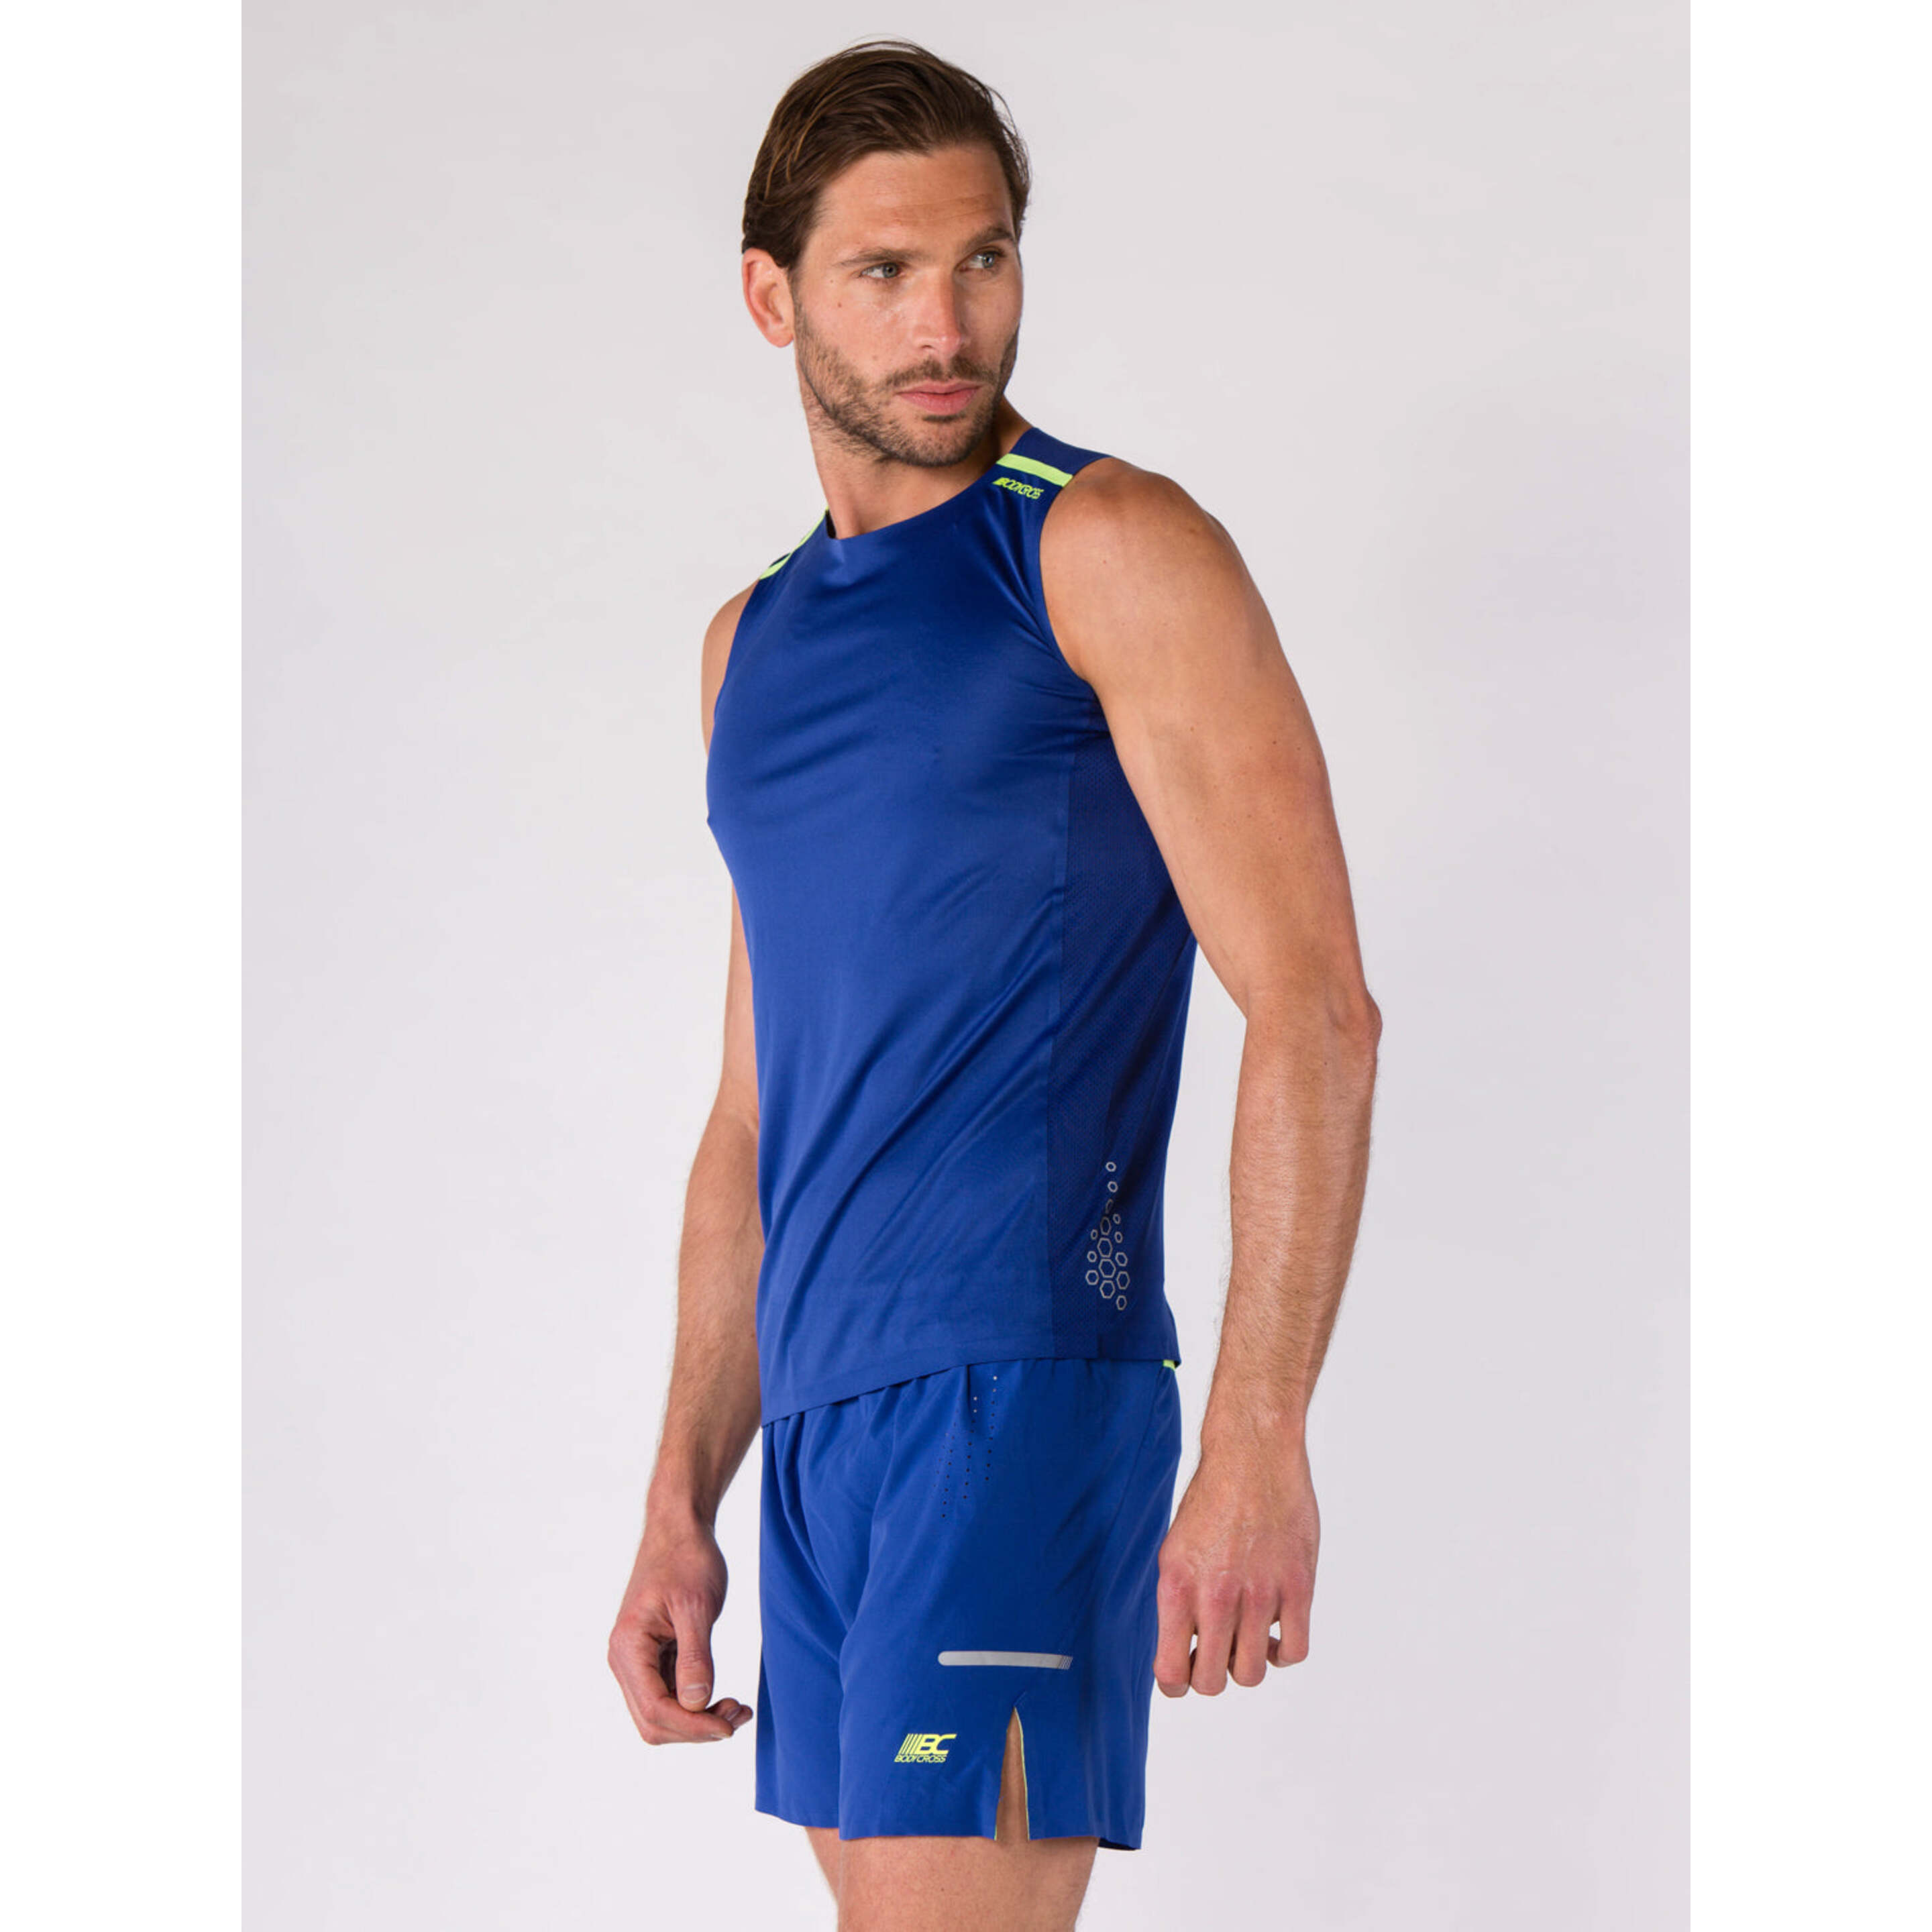 Camiseta Bodycross Orwen - azul - 